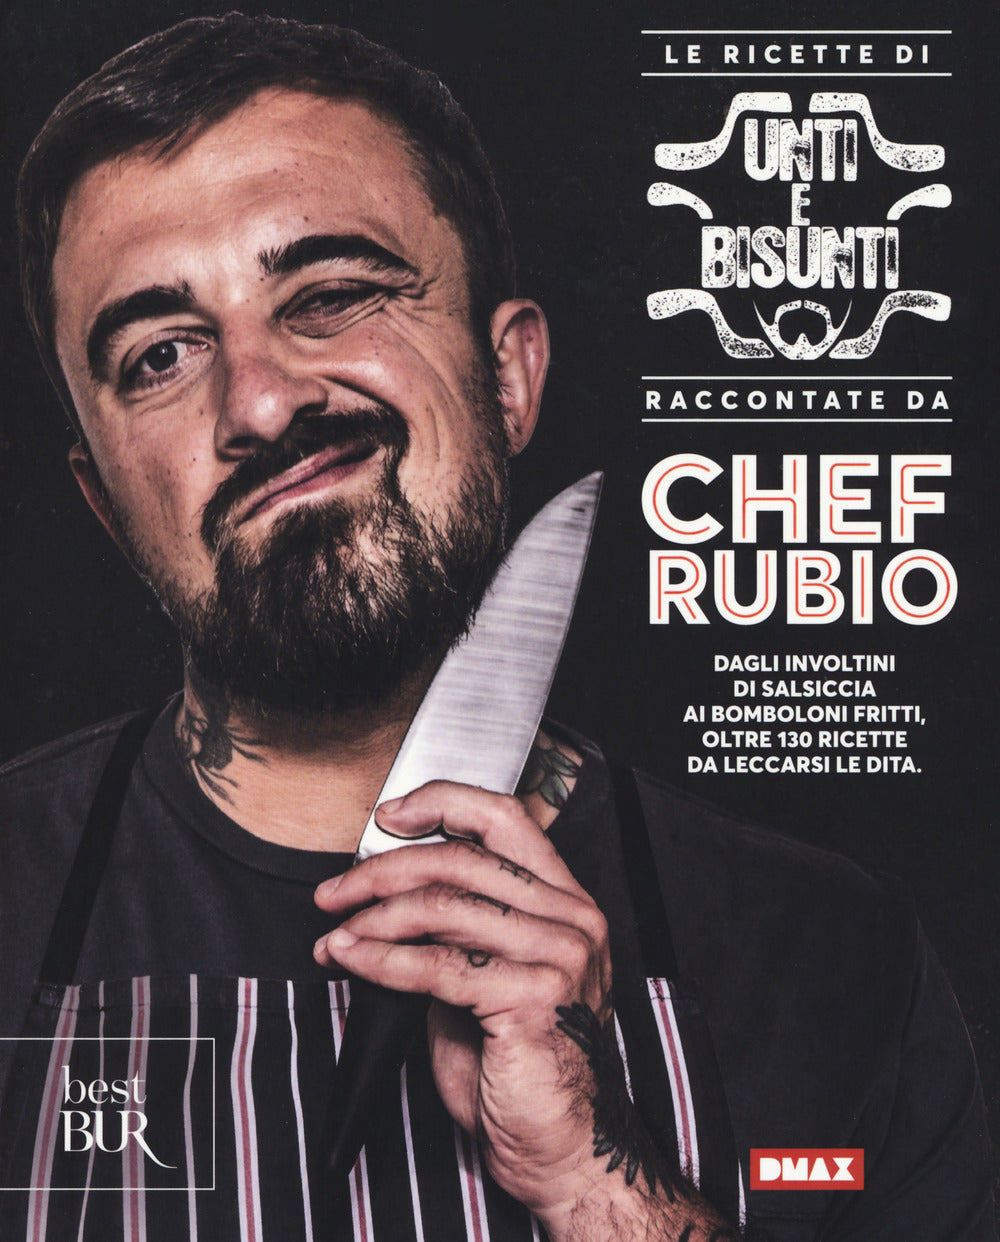 Le ricette di Unti e bisunti raccontate da Chef Rubio.